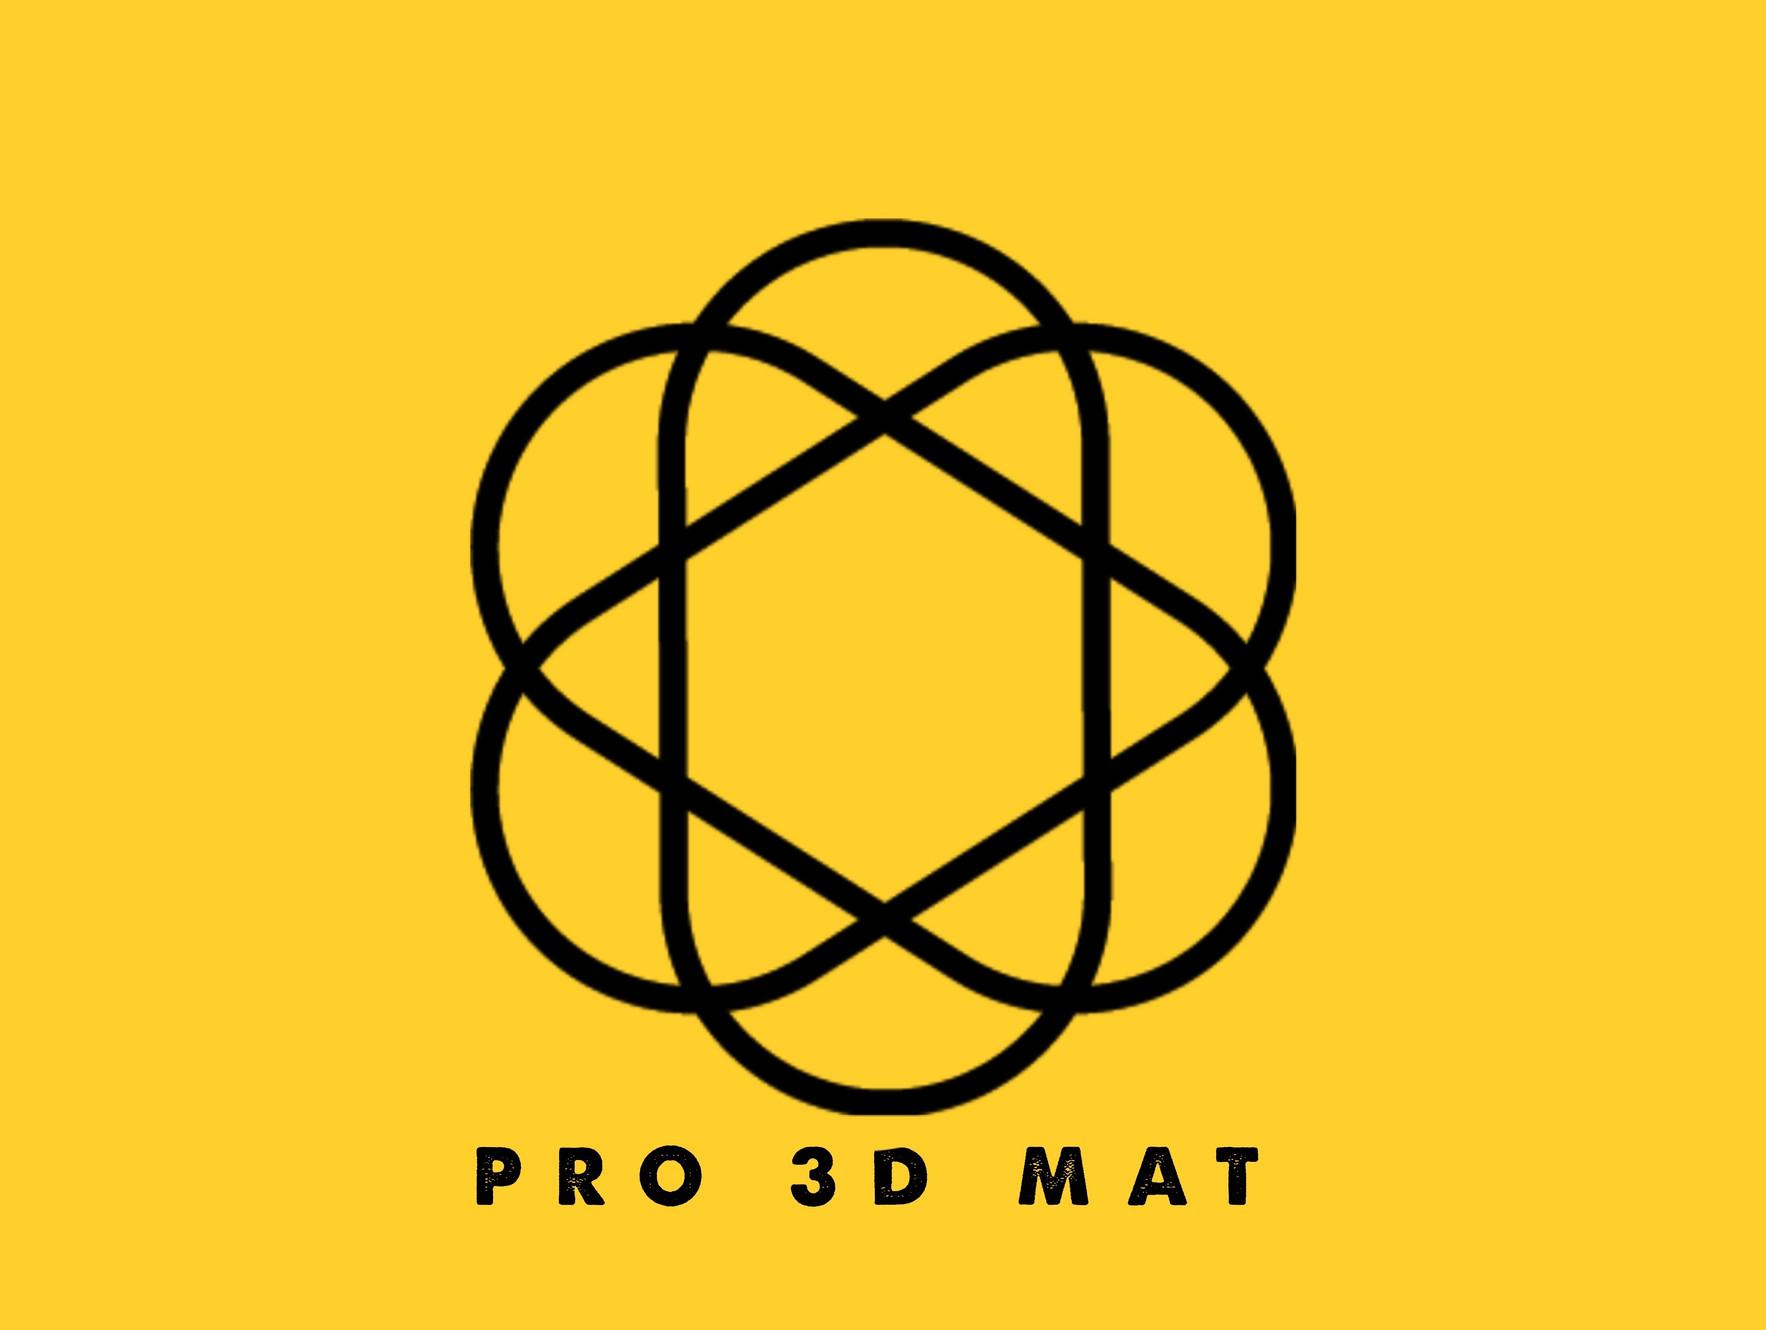 Powder Bed Fusion | Pro 3D Mat LLC